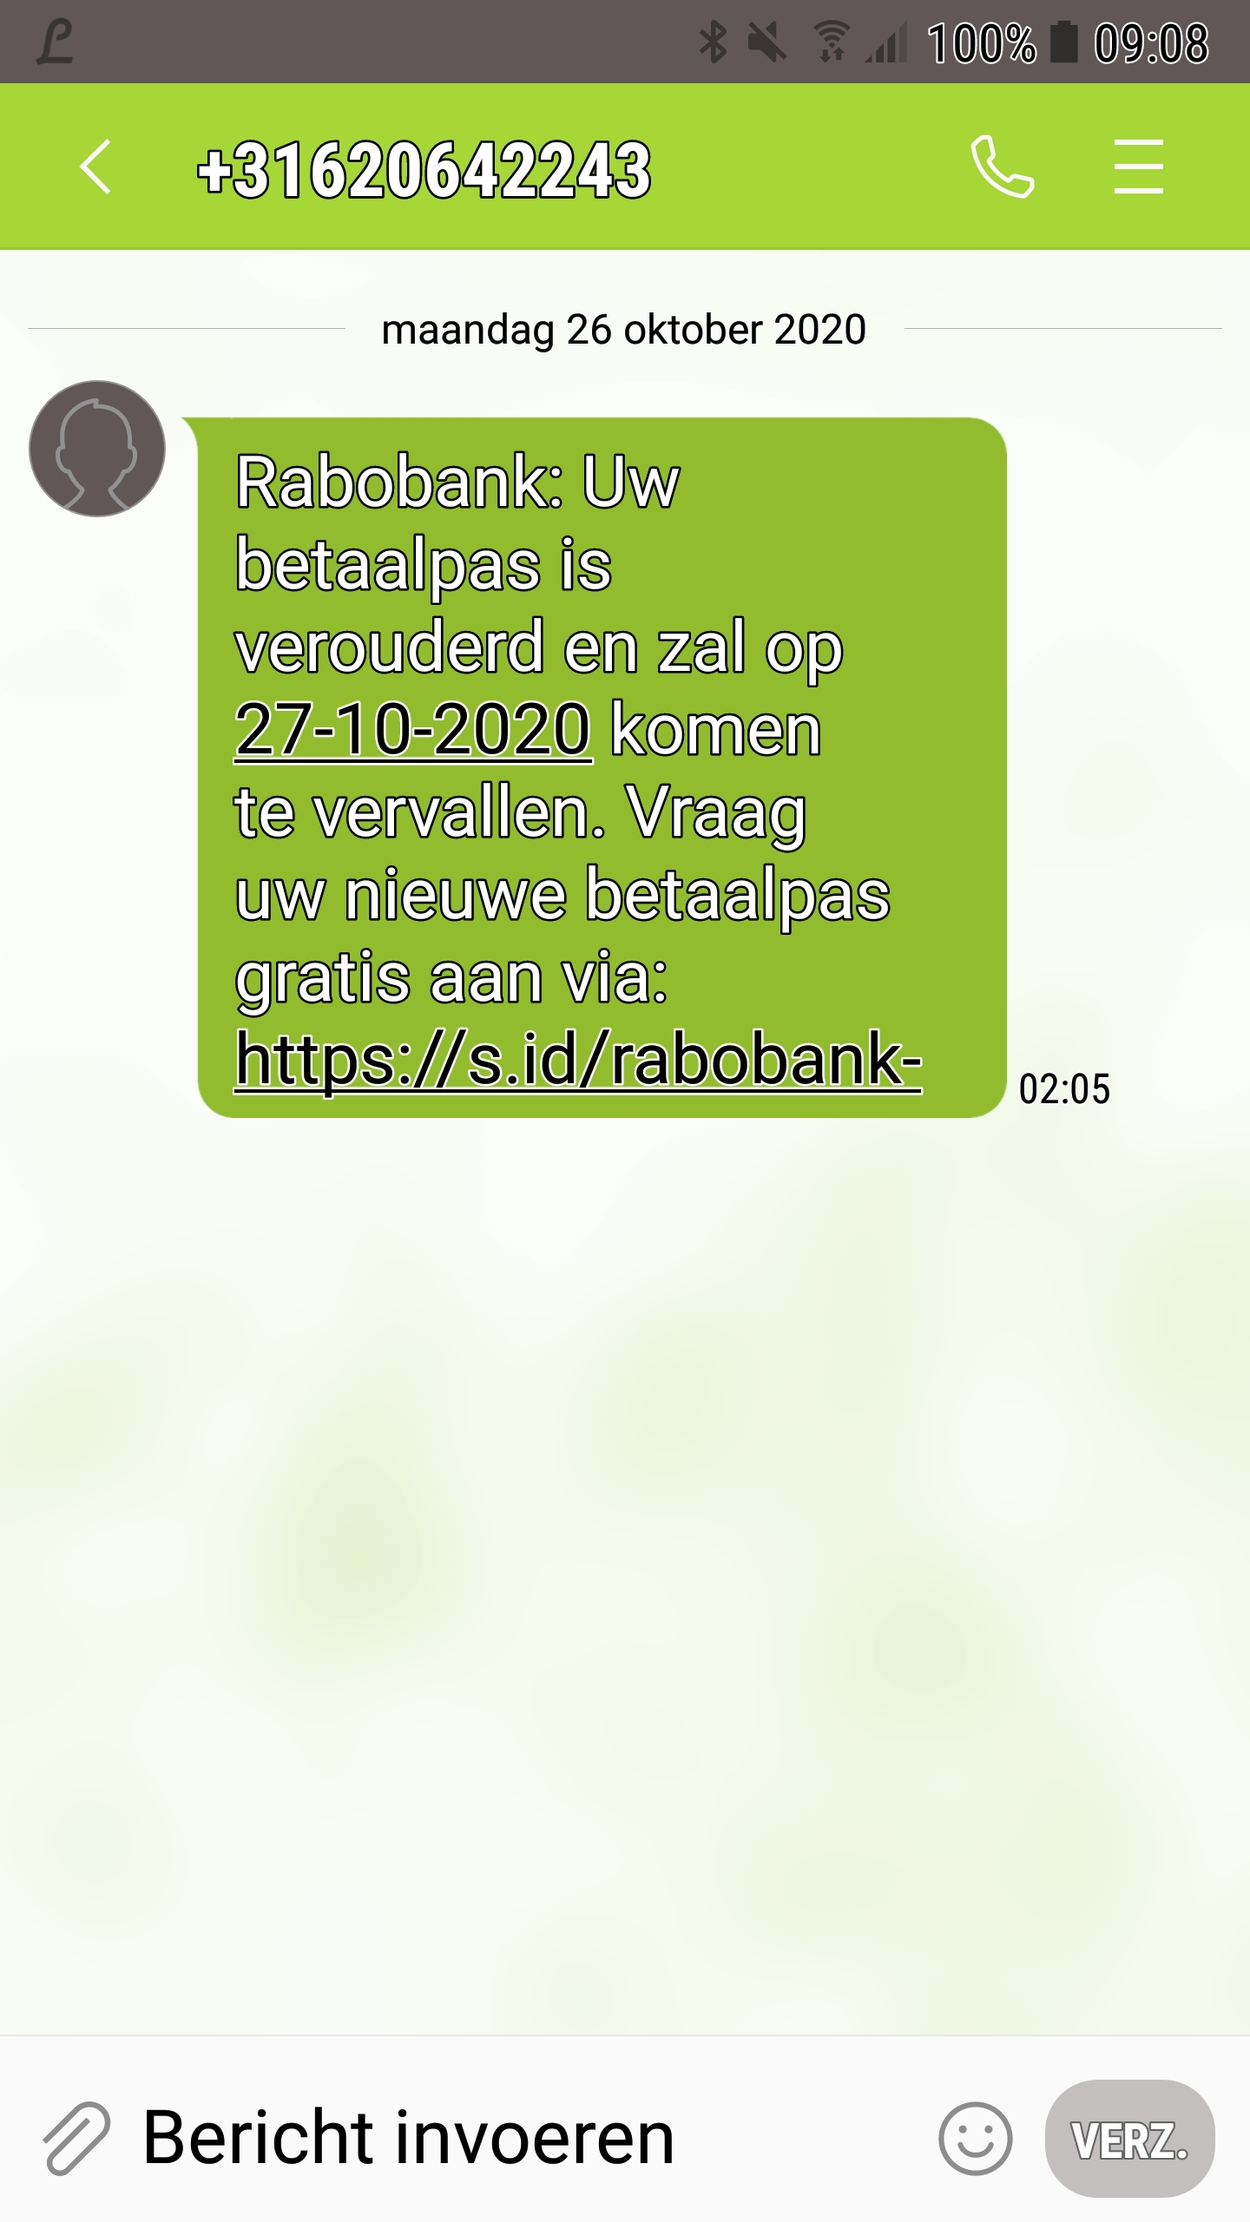 phishing sms Rabobank - okt 2020